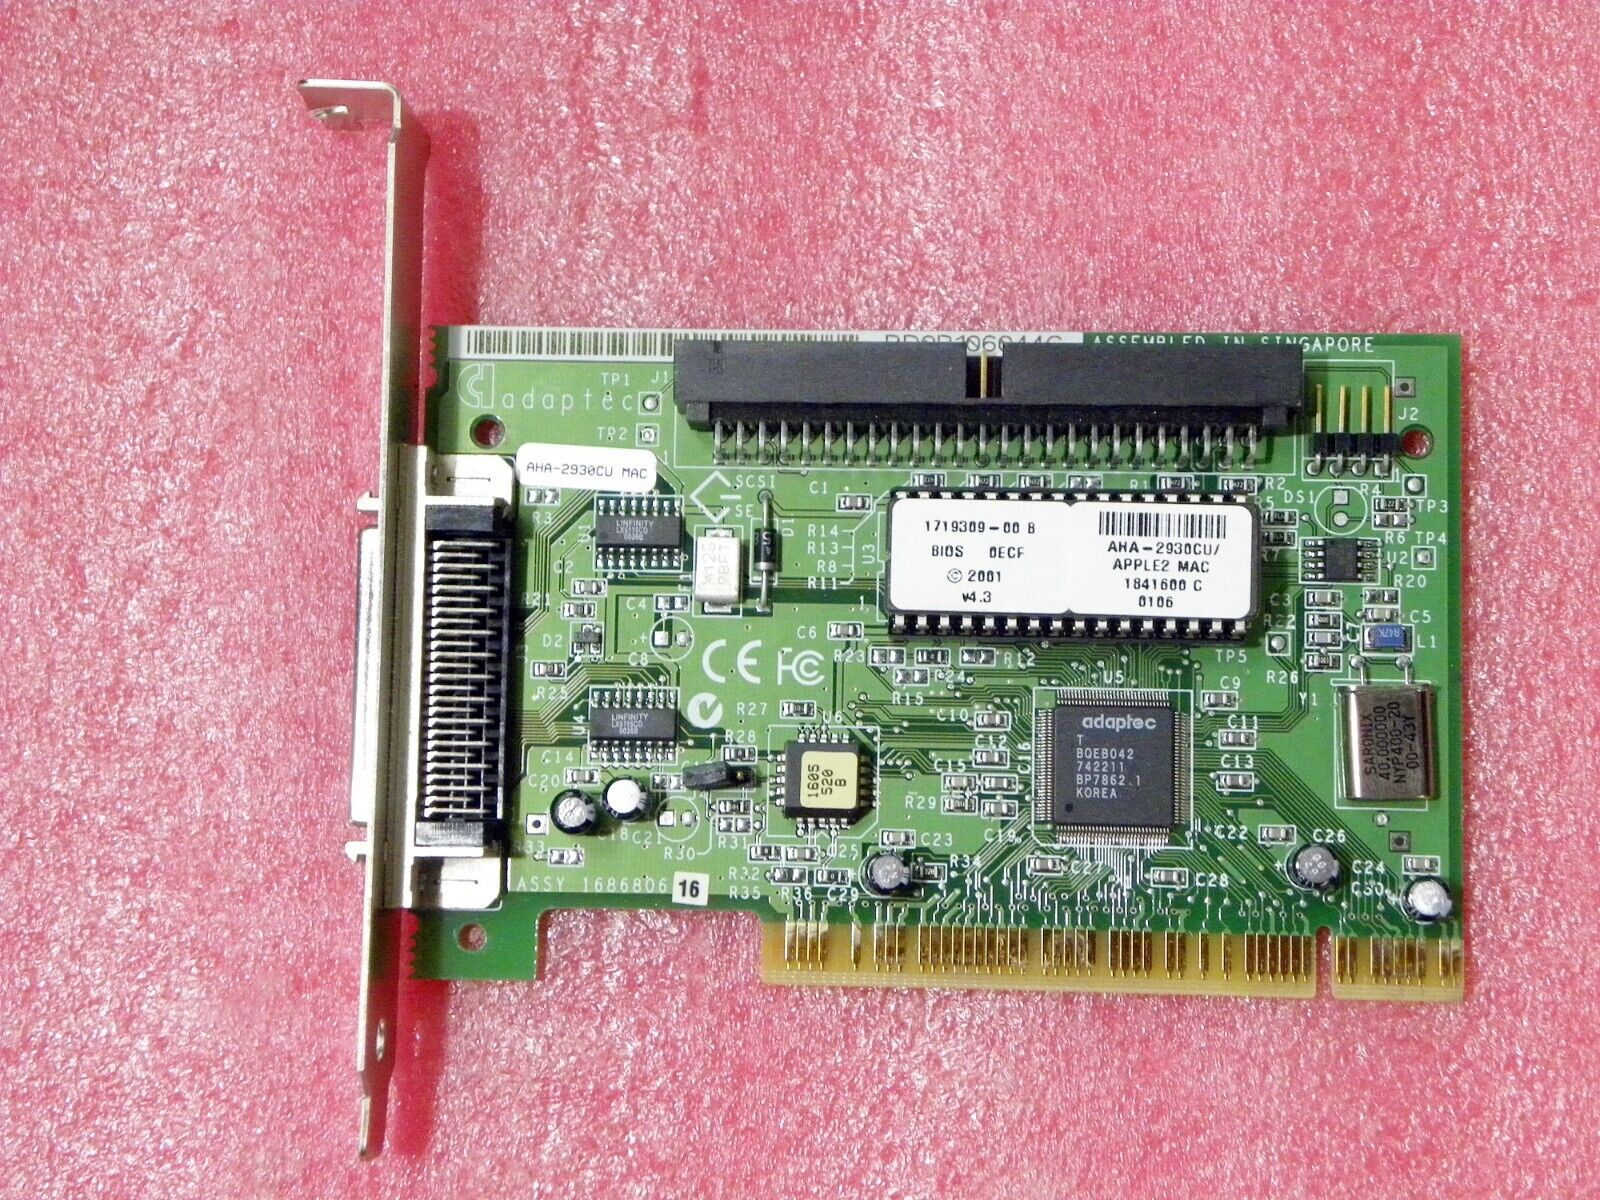 Apple Adaptec AHA-2930CU MAC OS 9.1 OS X PCI 50pin SCSI Controller Adapter Card